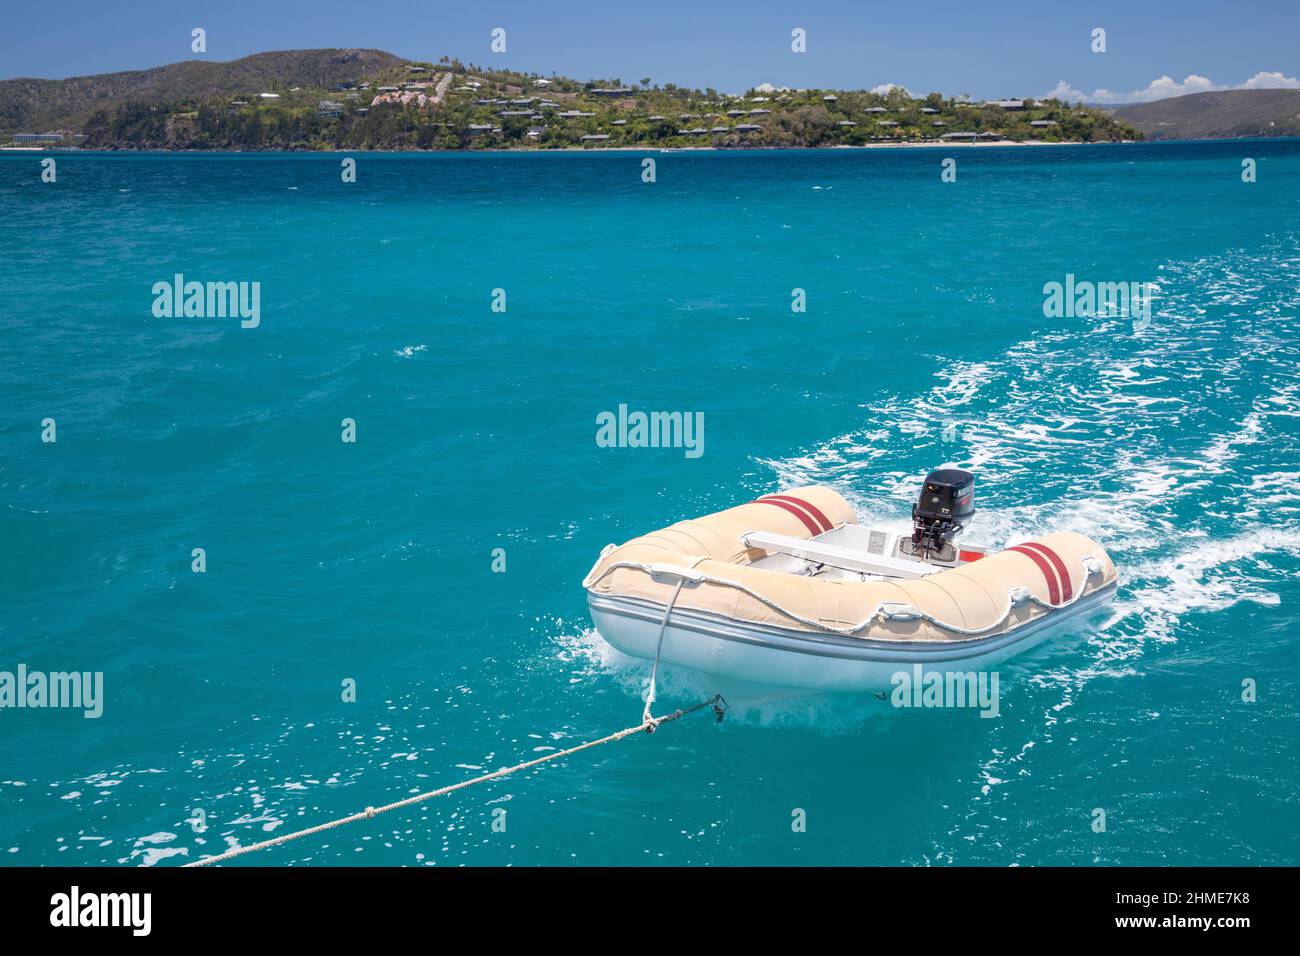 Hamilton Island. Sailing in Whitsundays Australia. Whitsunday Islands, Queensland. Stock Photo